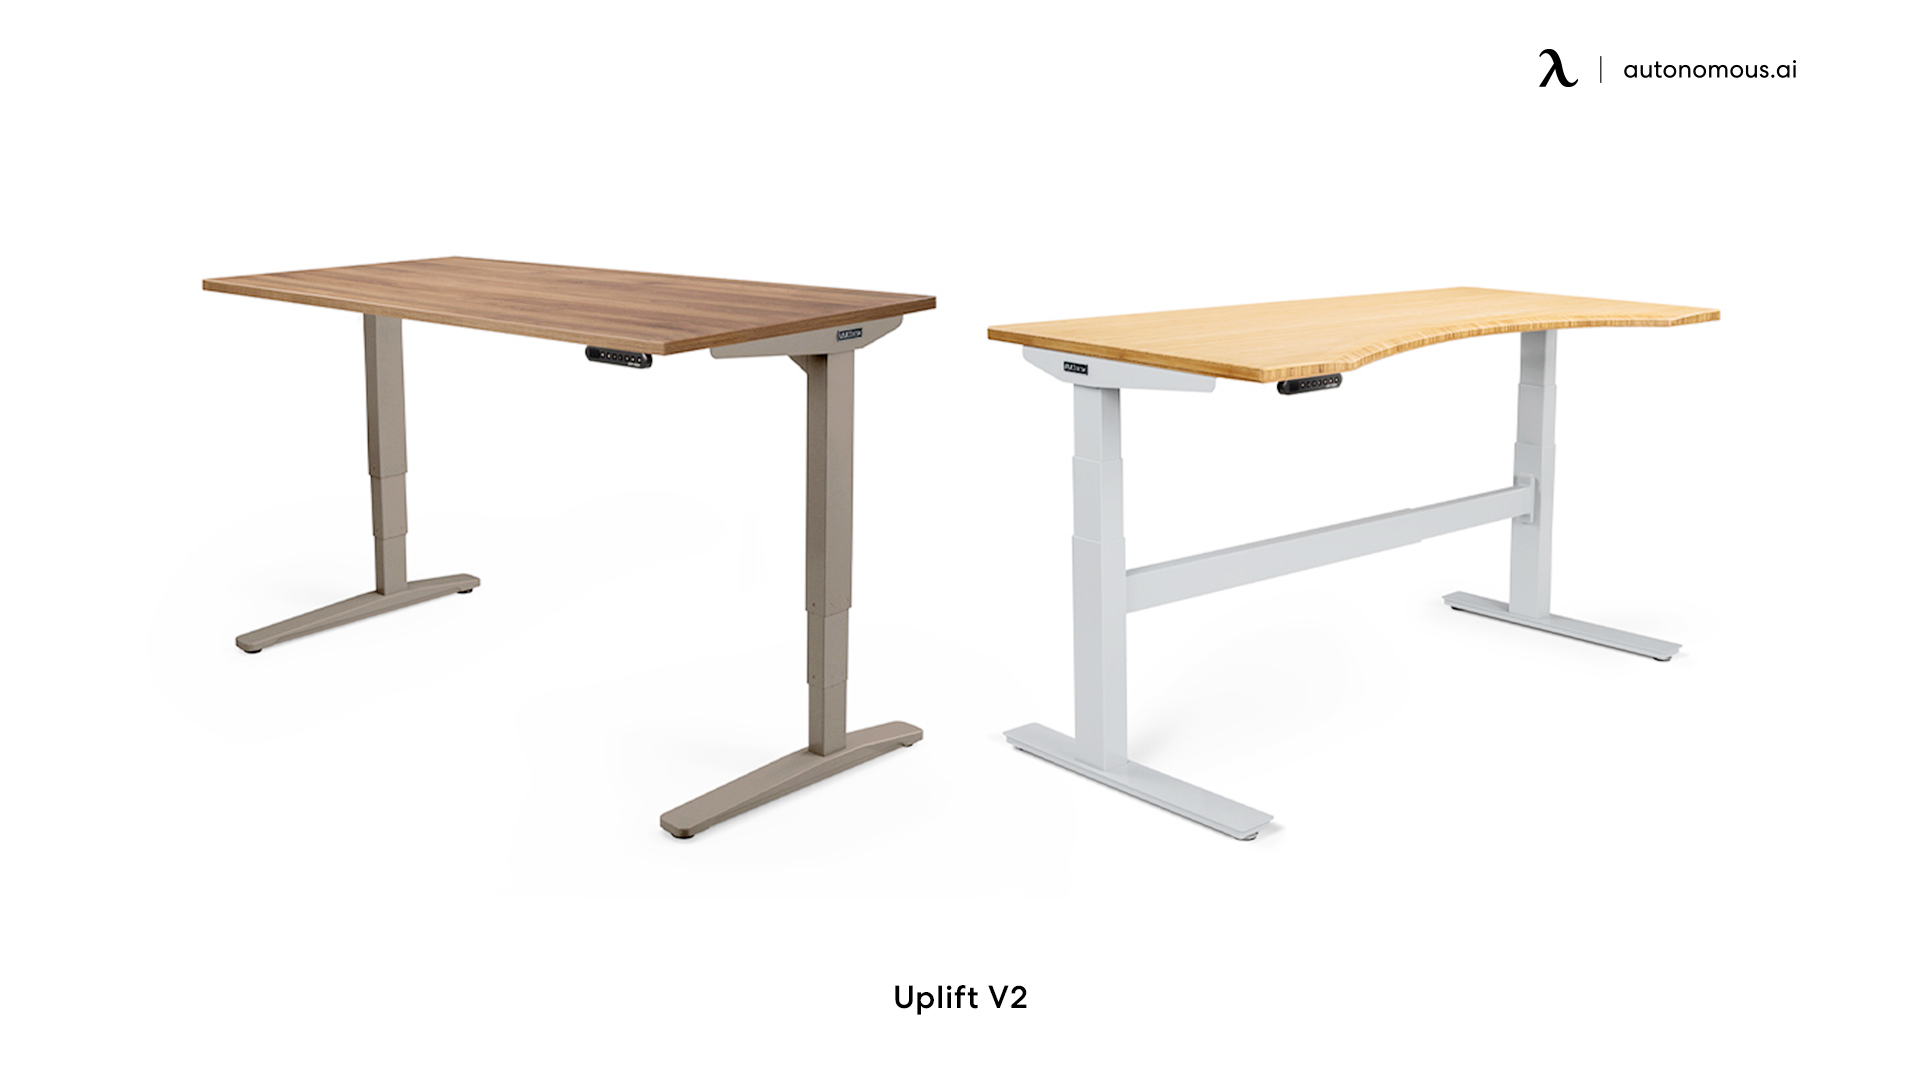 Uplift V2 Adjustable Standing Desk